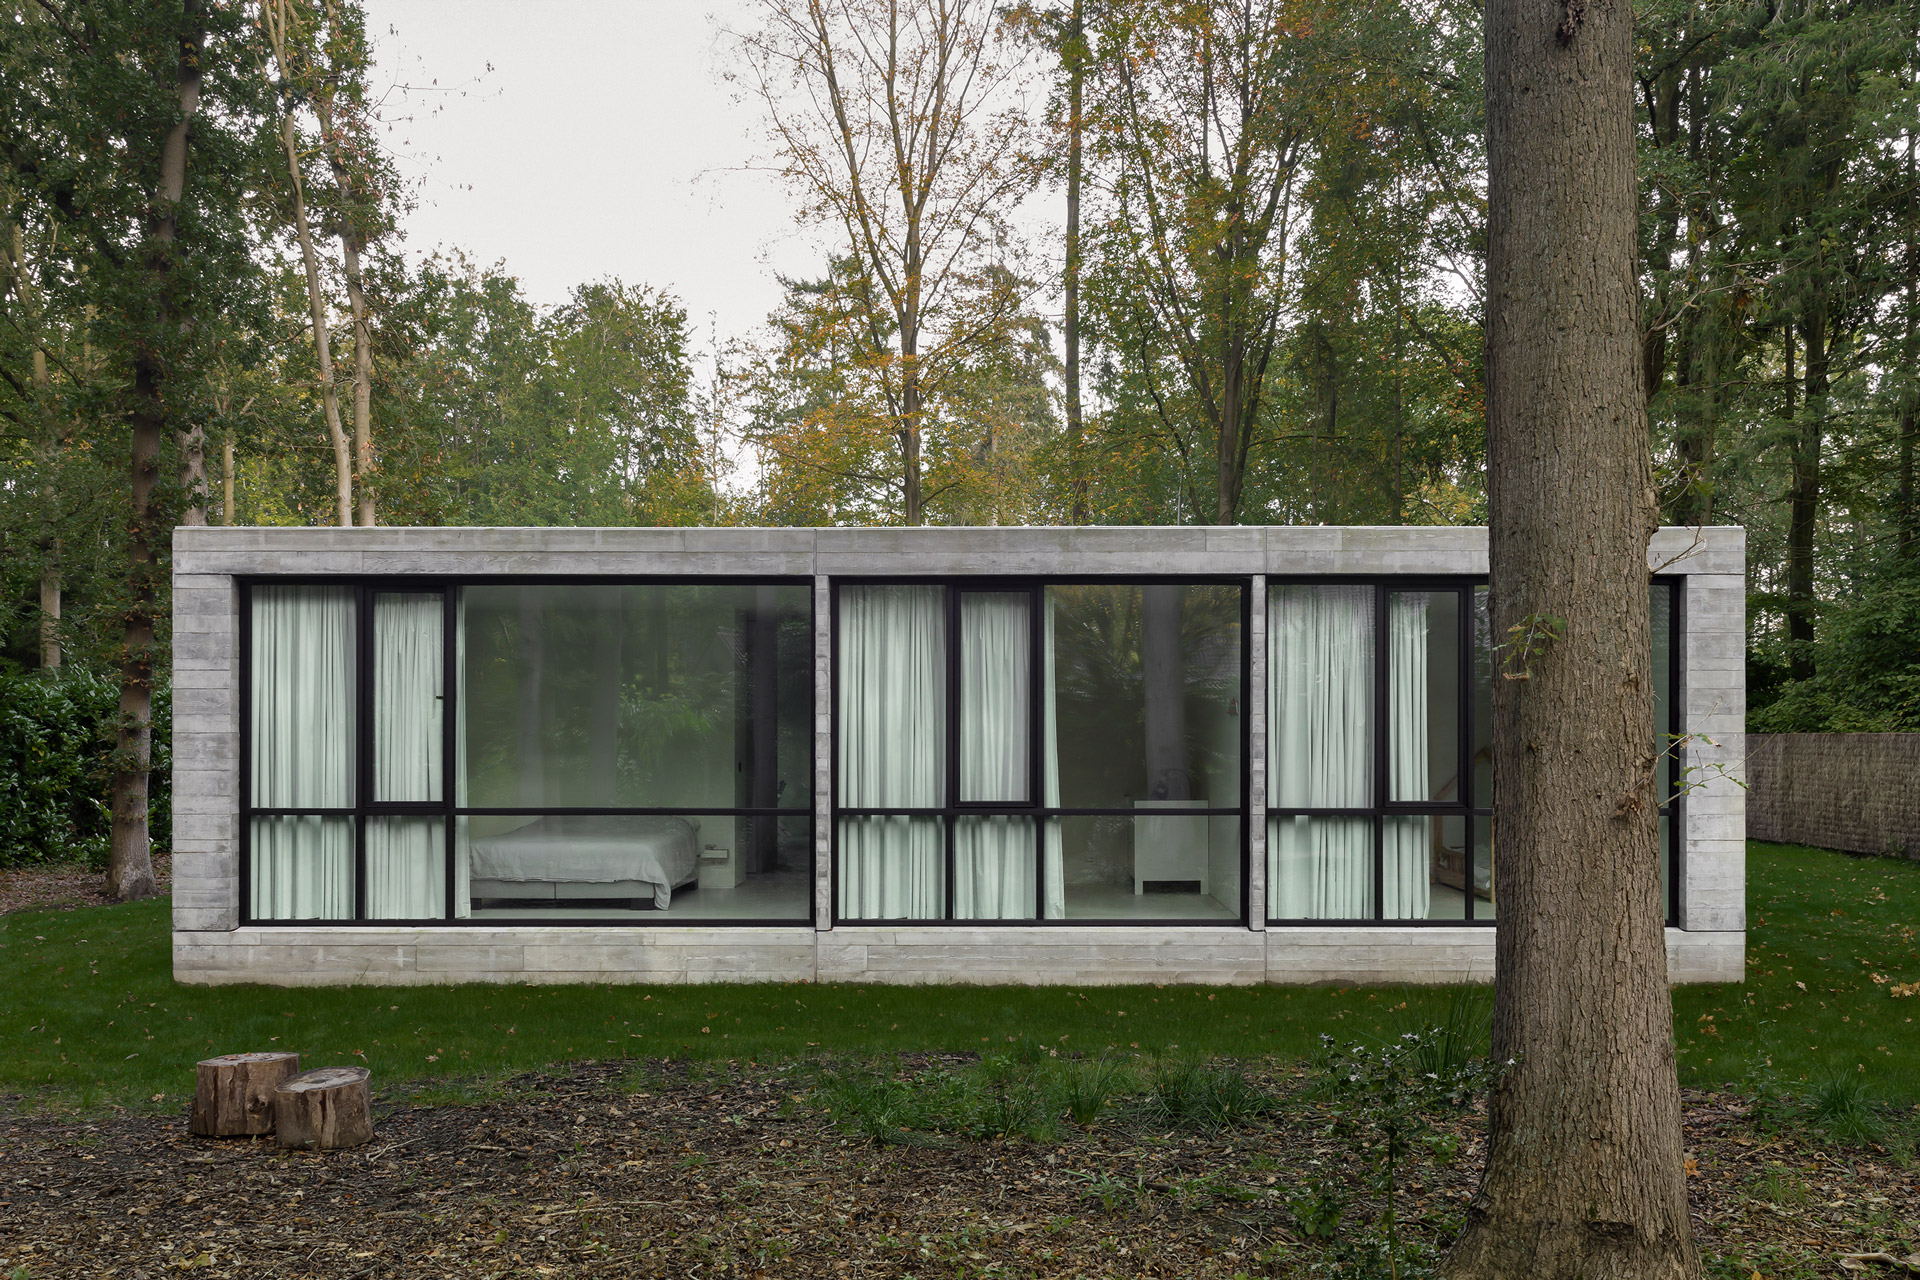 Binnenkijken: betaalbare betonnen bungalow in het bos